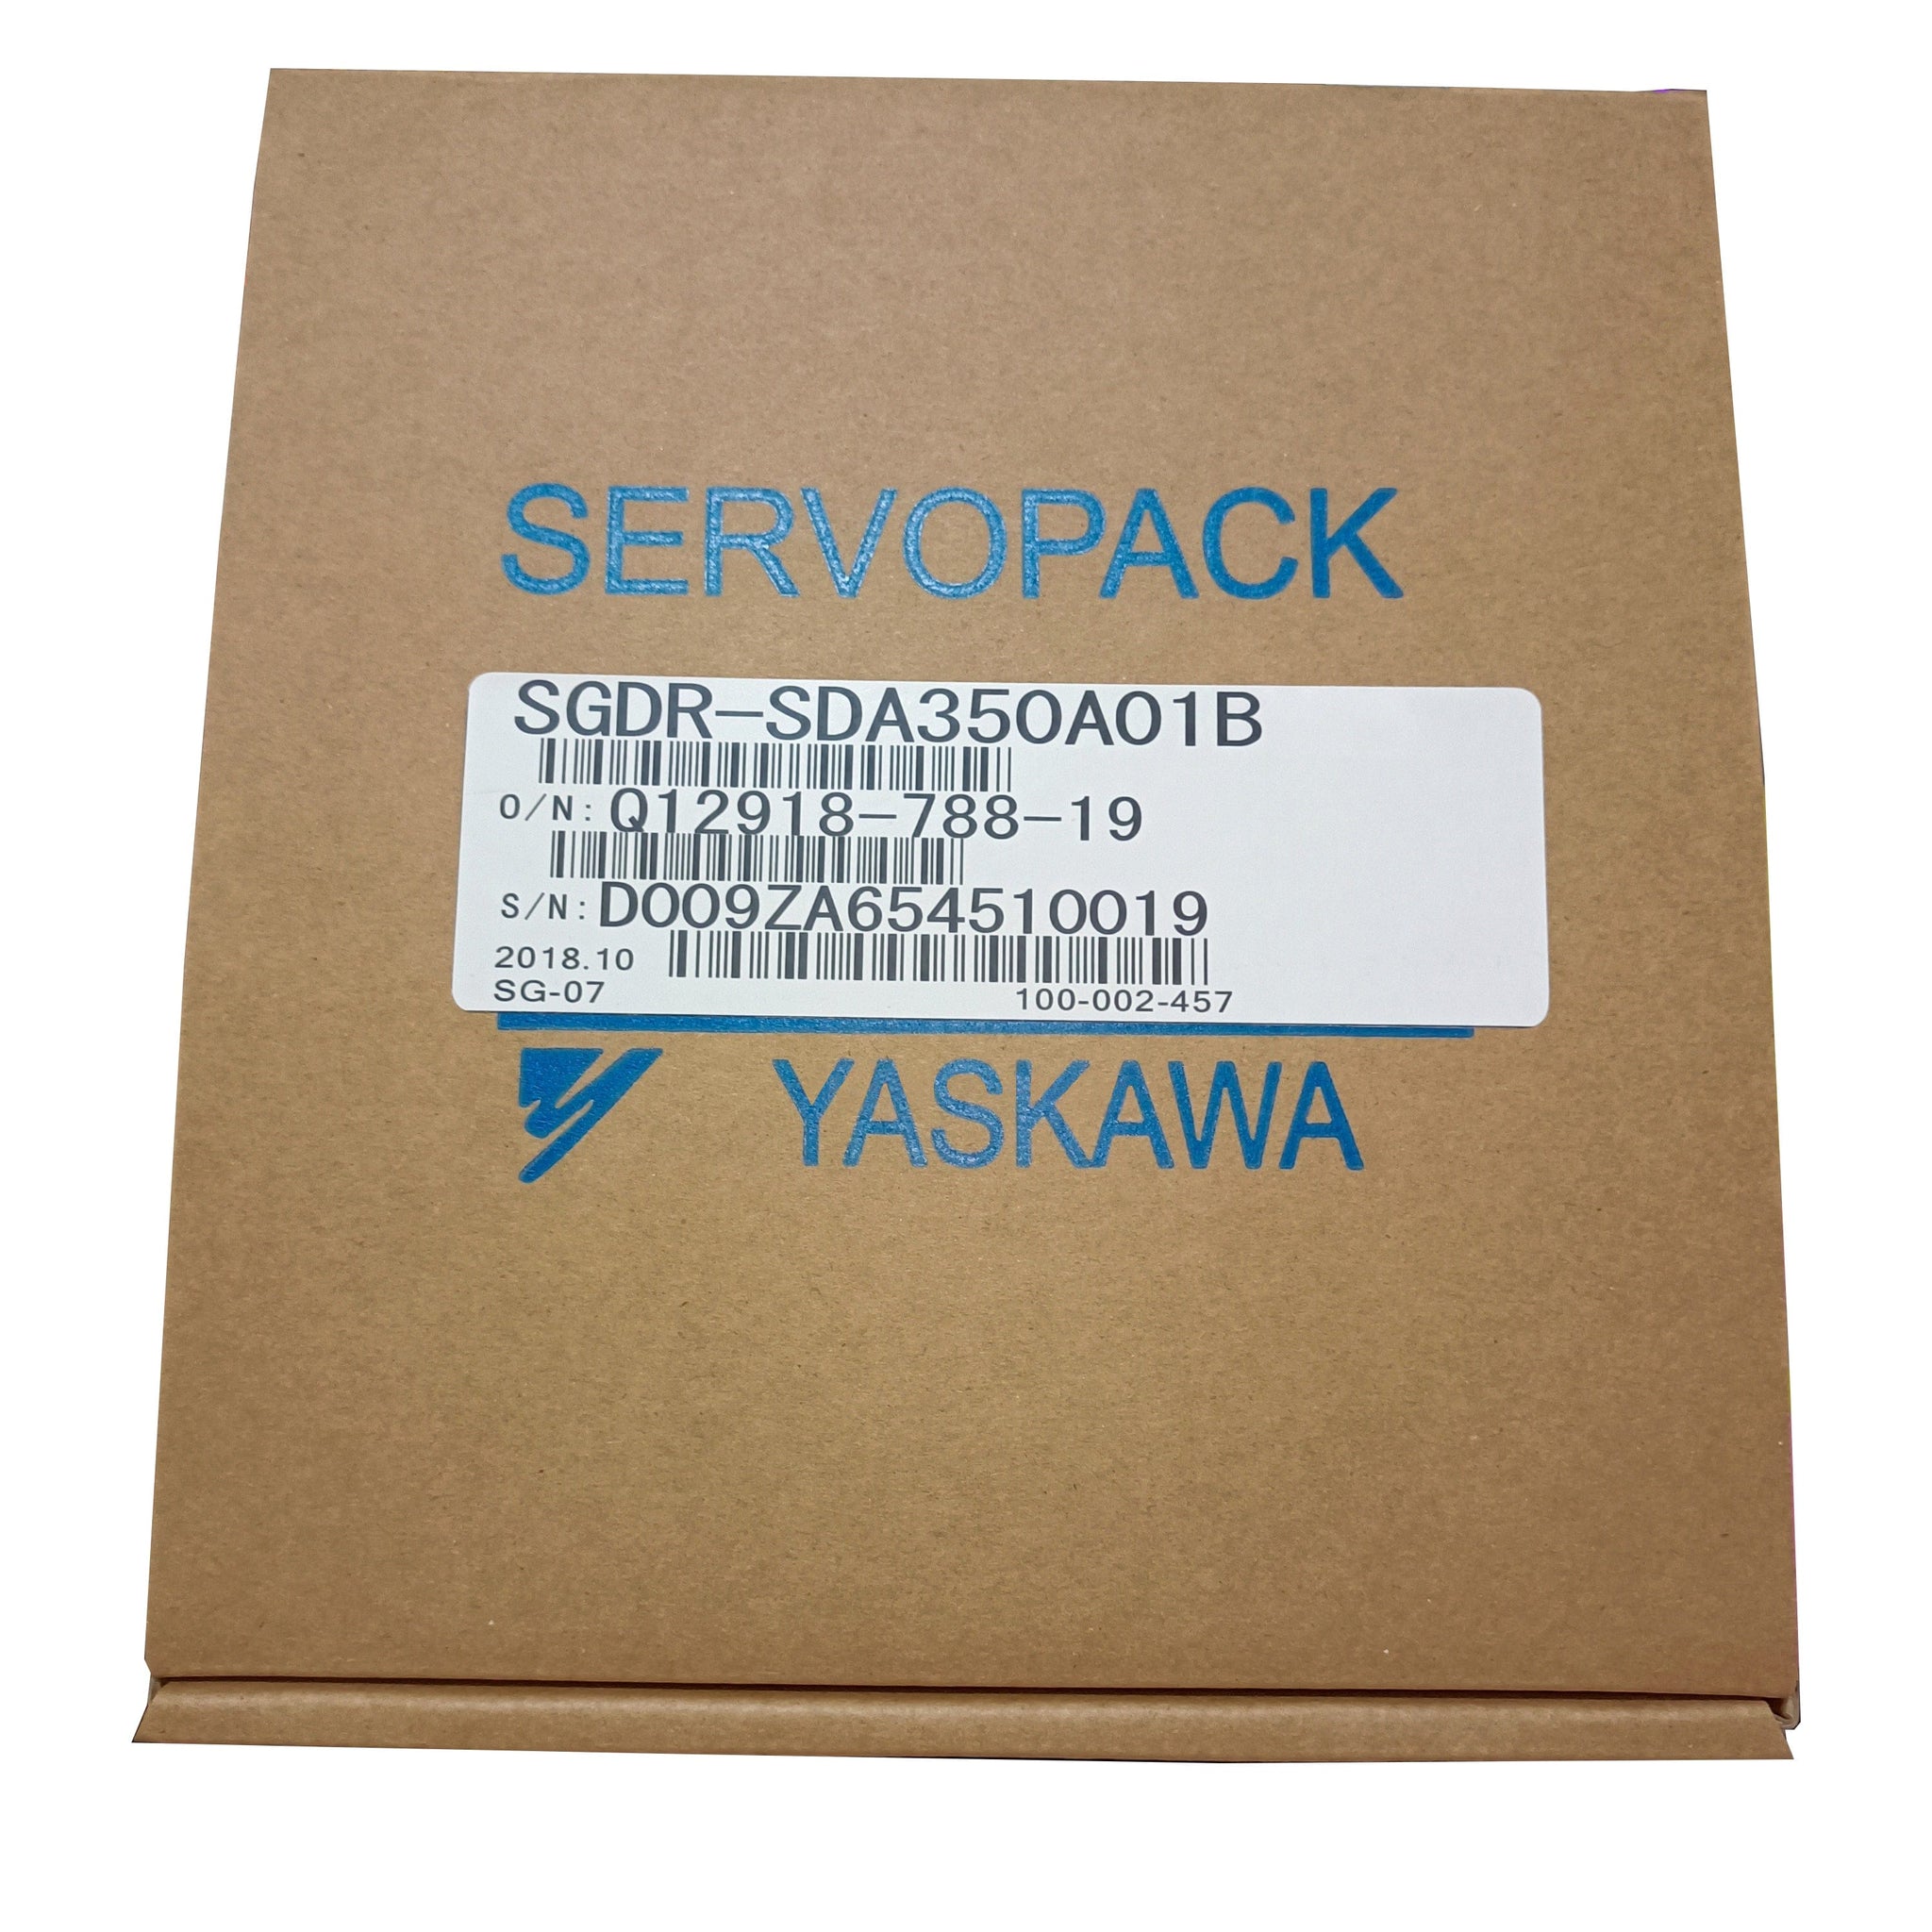 Yaskawa Robot SGDR-SDA350A01B